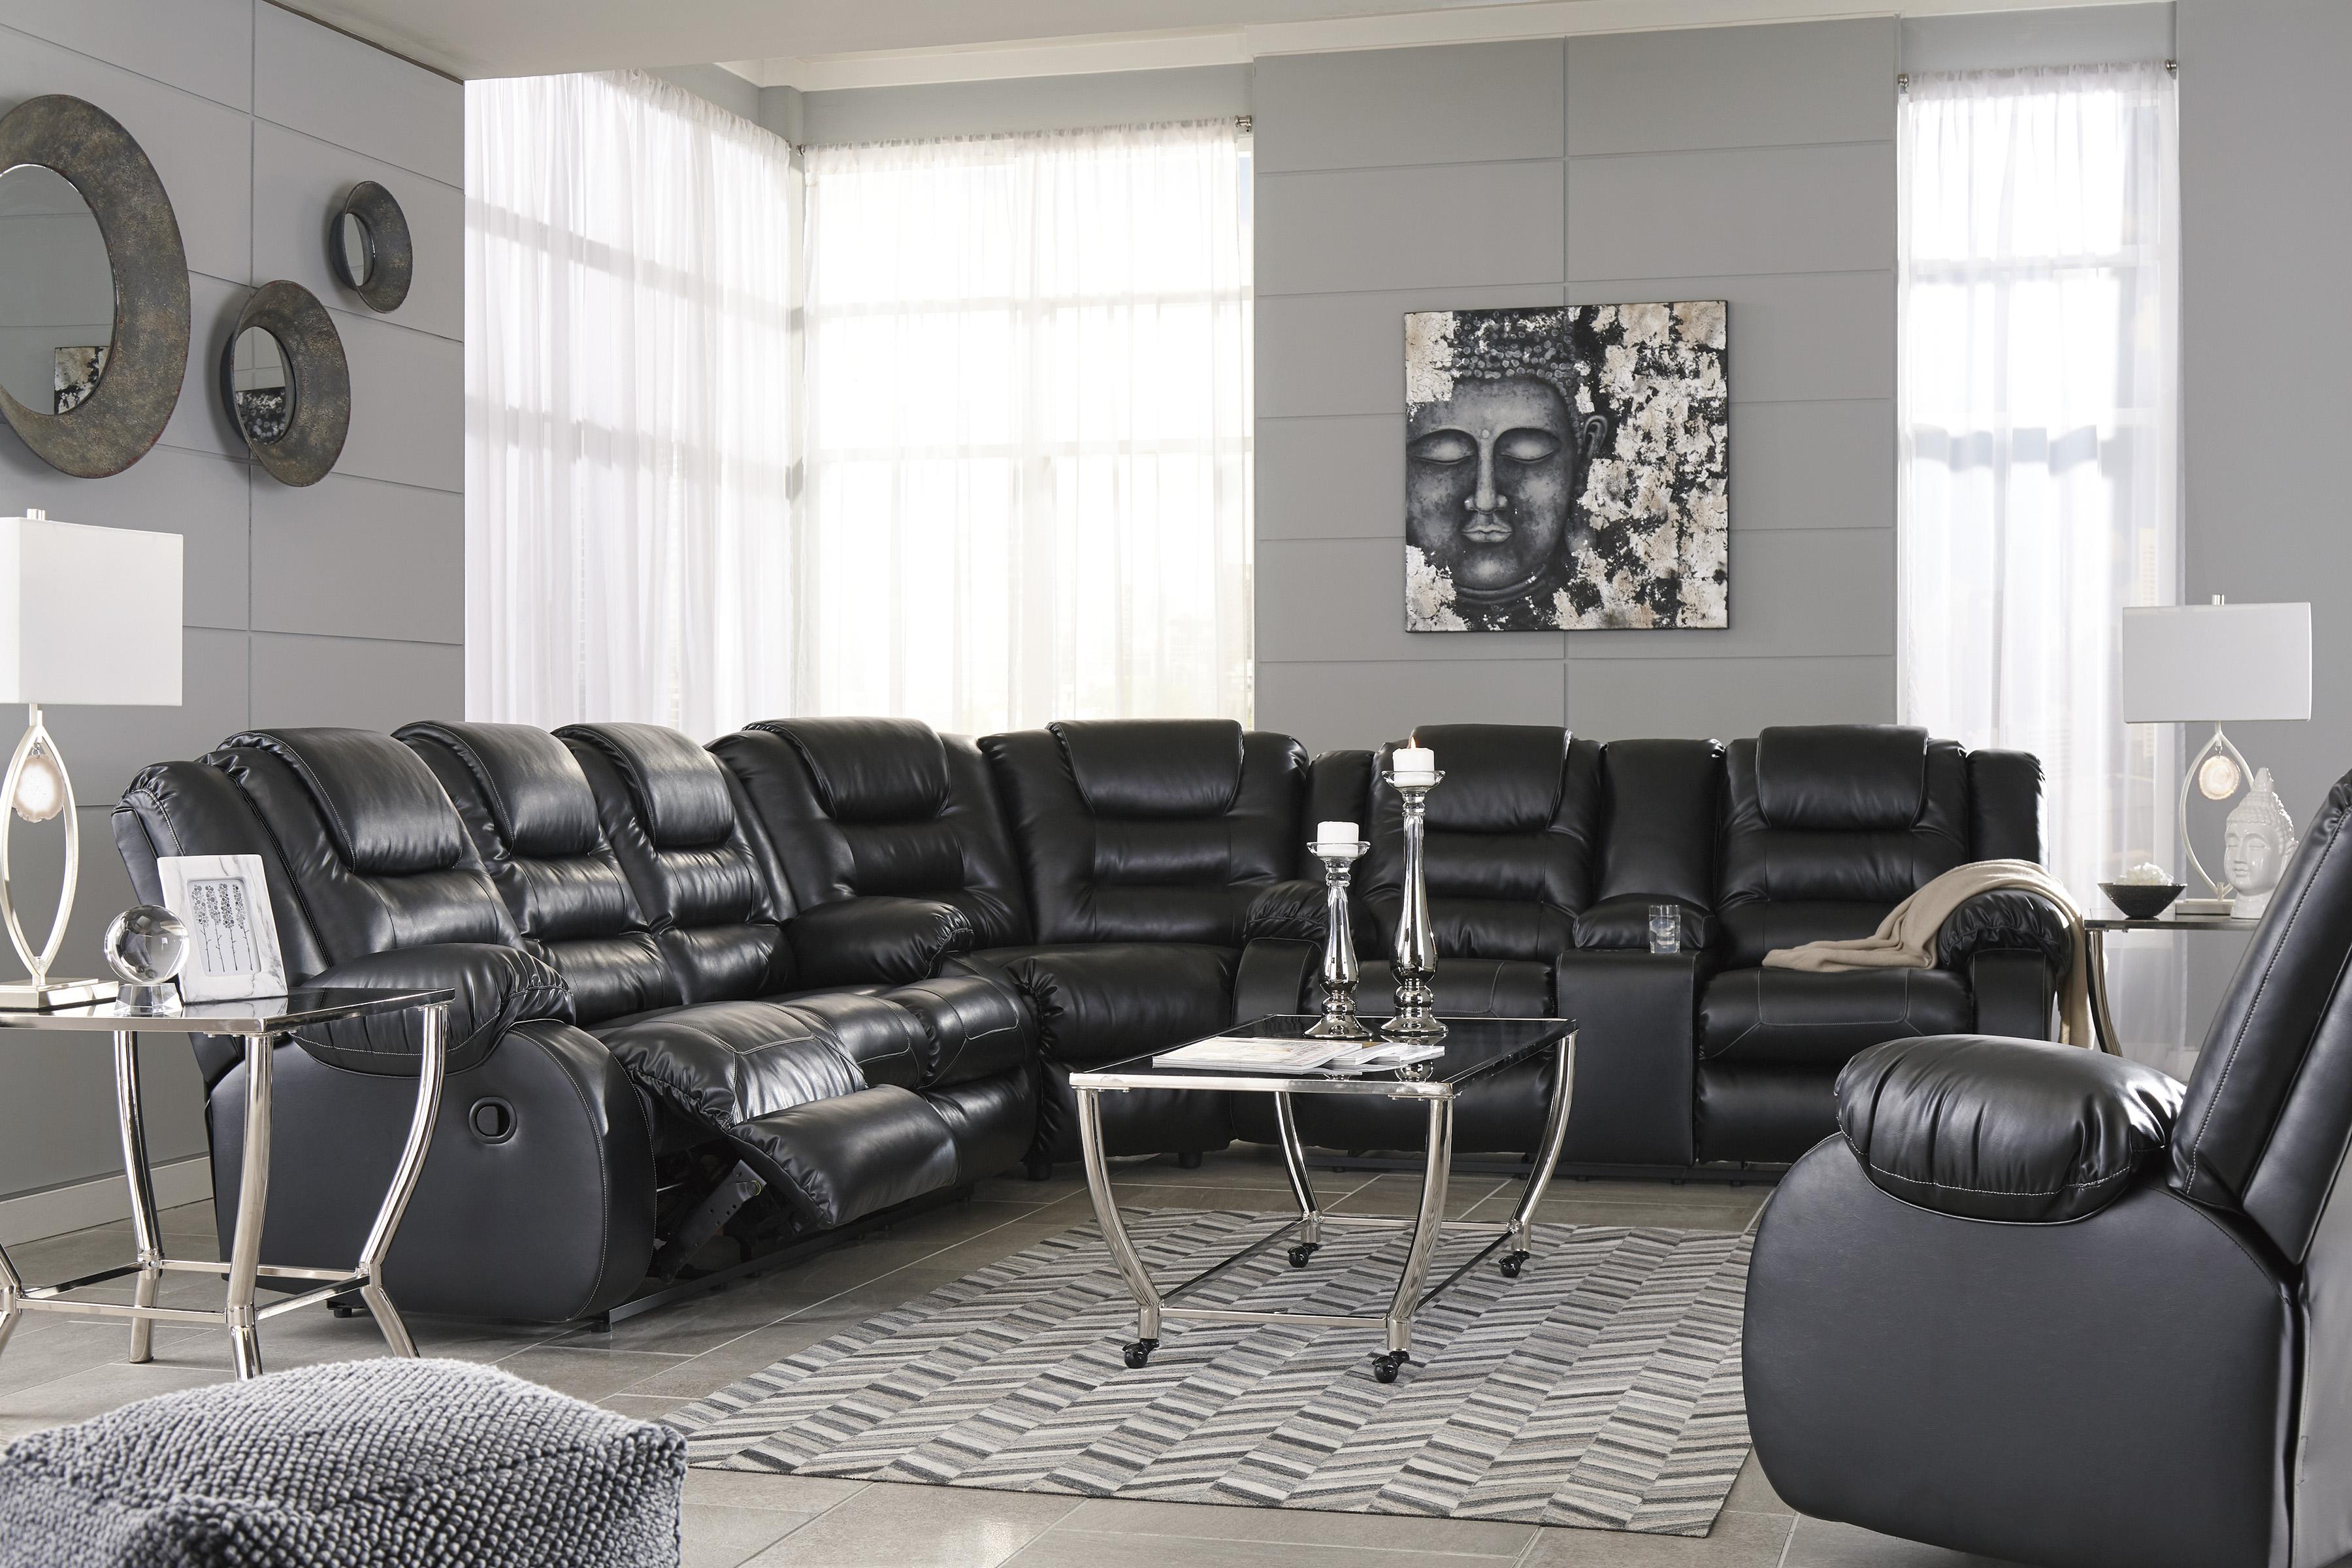 

    
Reclining Sofa Set 4Pcs Black Faux Leather Contemporary Ashley Vacherie
